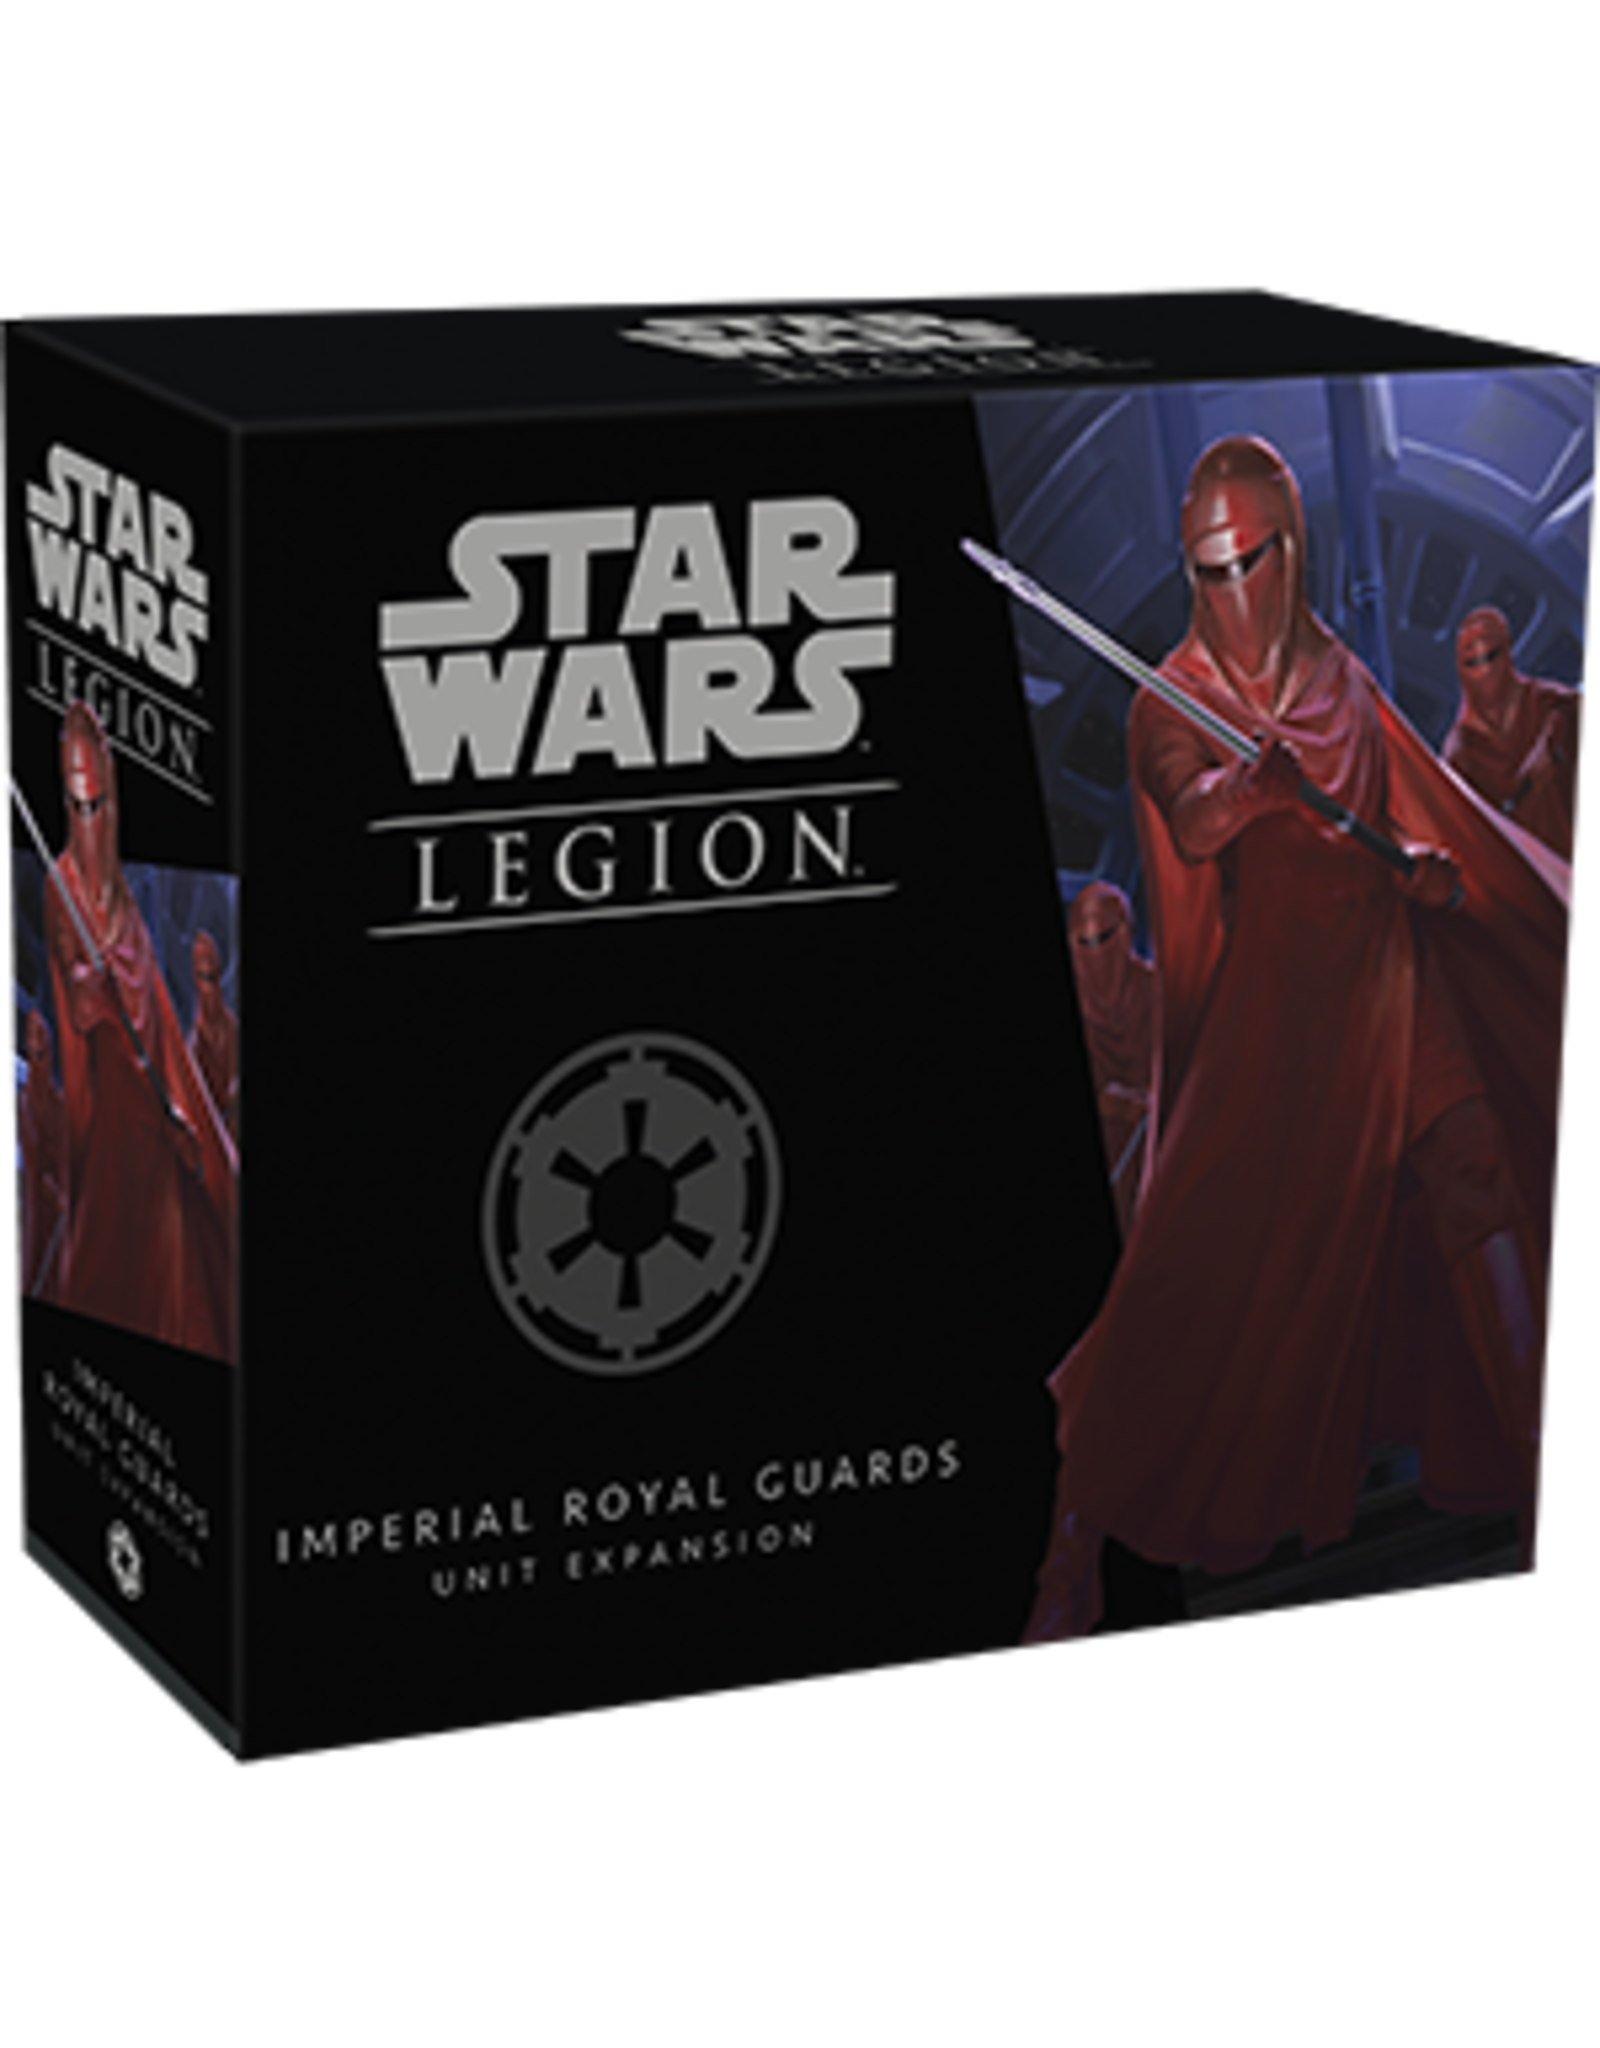 Star Wars Legion Star Wars Legion Imperial Royal Guards